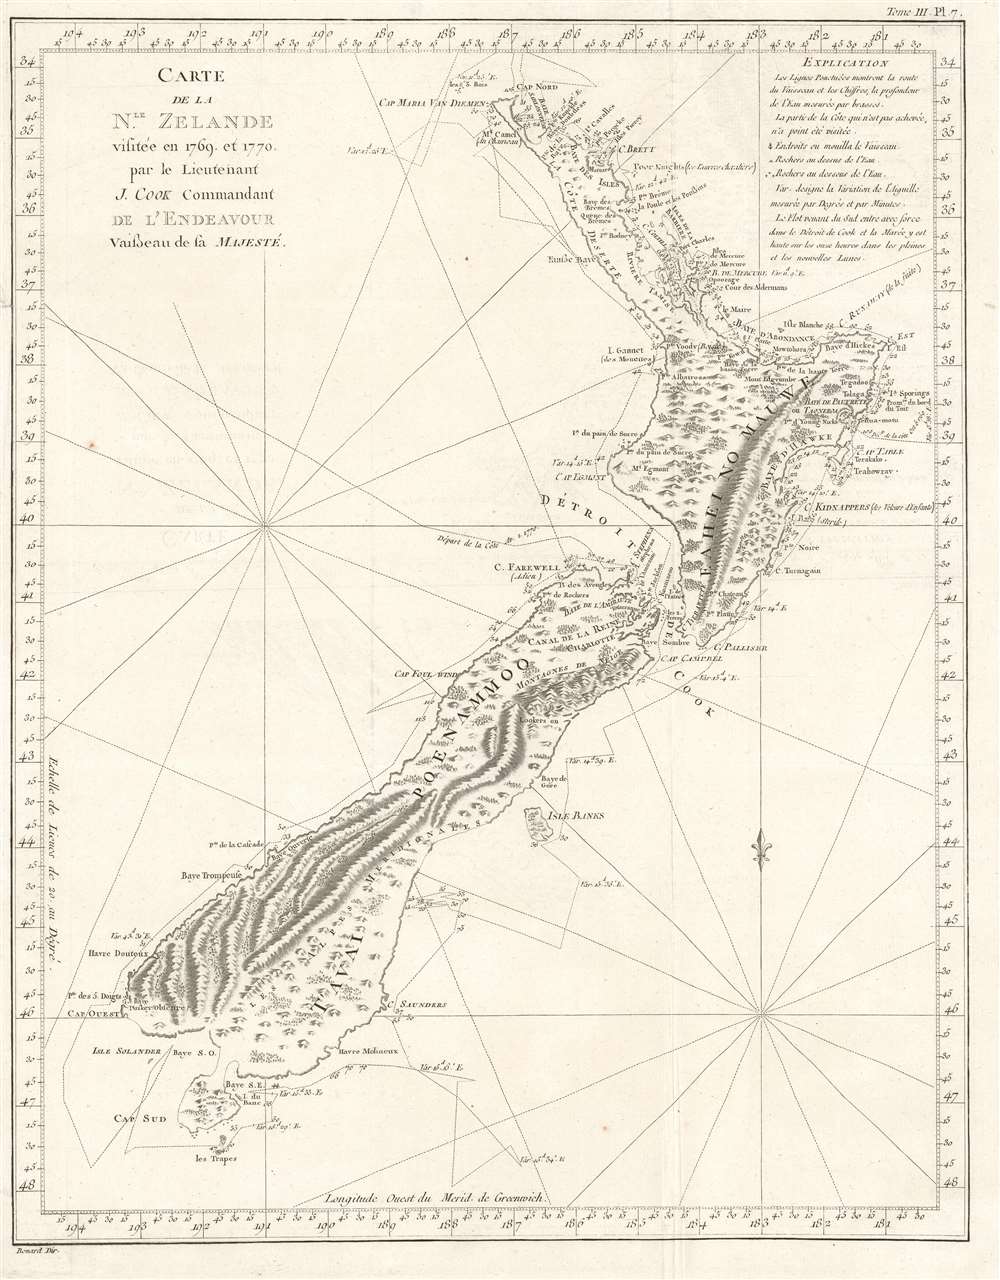 Carte de la Nle. Zelande visitée en 1769 et 1770 par le Lieutenant J. Cook Commandant de l'Endeavour vasseau de sa Majesté. - Main View